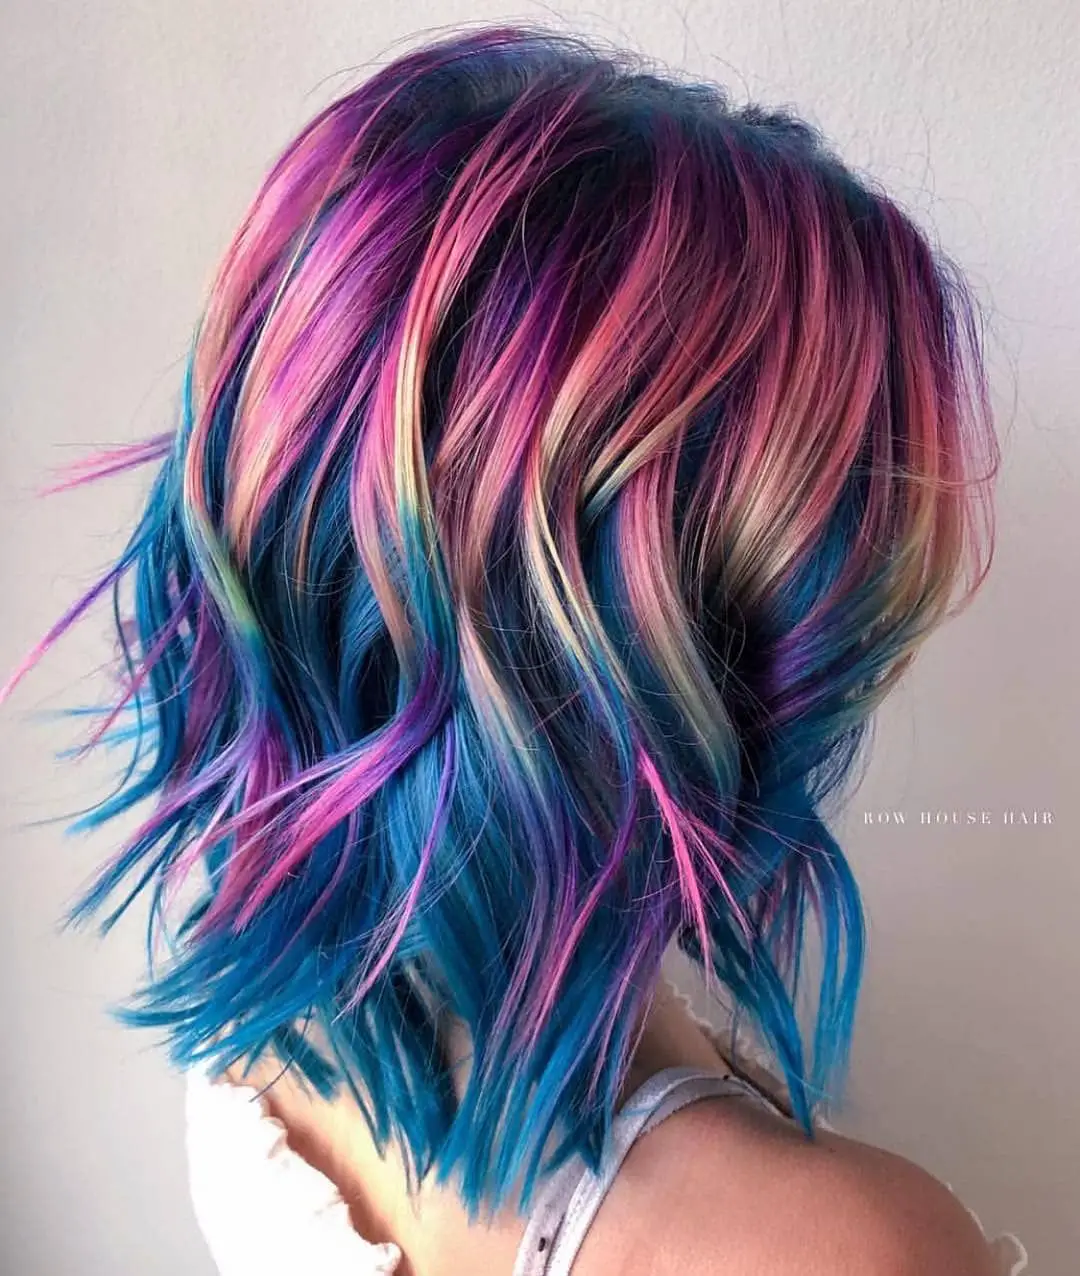 63-coolest-rainbow-hair-ideas-trending-colors-to-try Unicorn Rainbow Hair